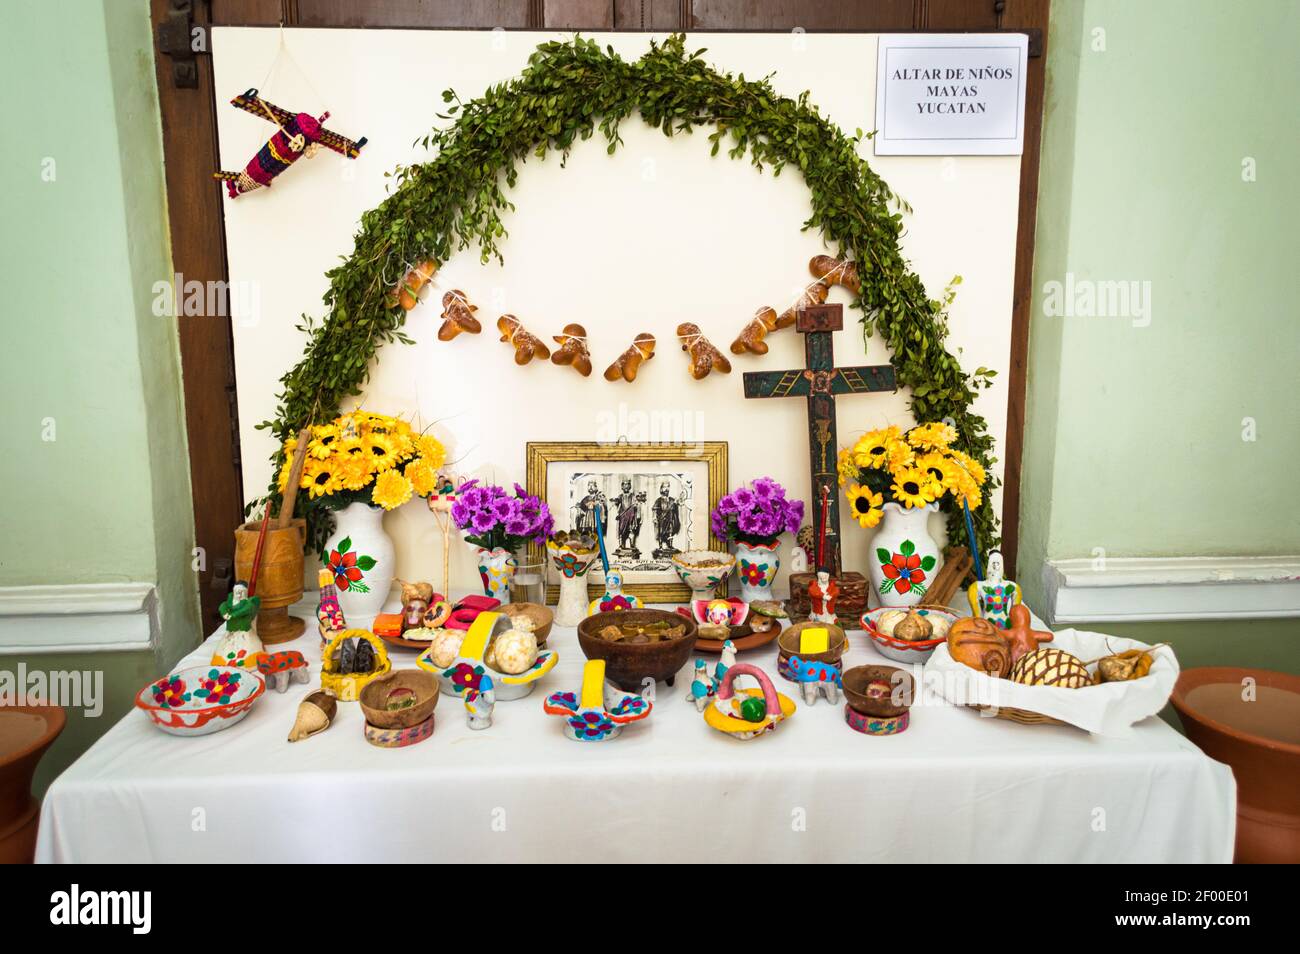 Día del altar muerto específicamente para honrar a los niños este es un altar de Yucatán, México donde dia de muertos se llama Hanal Pixan. Foto de stock